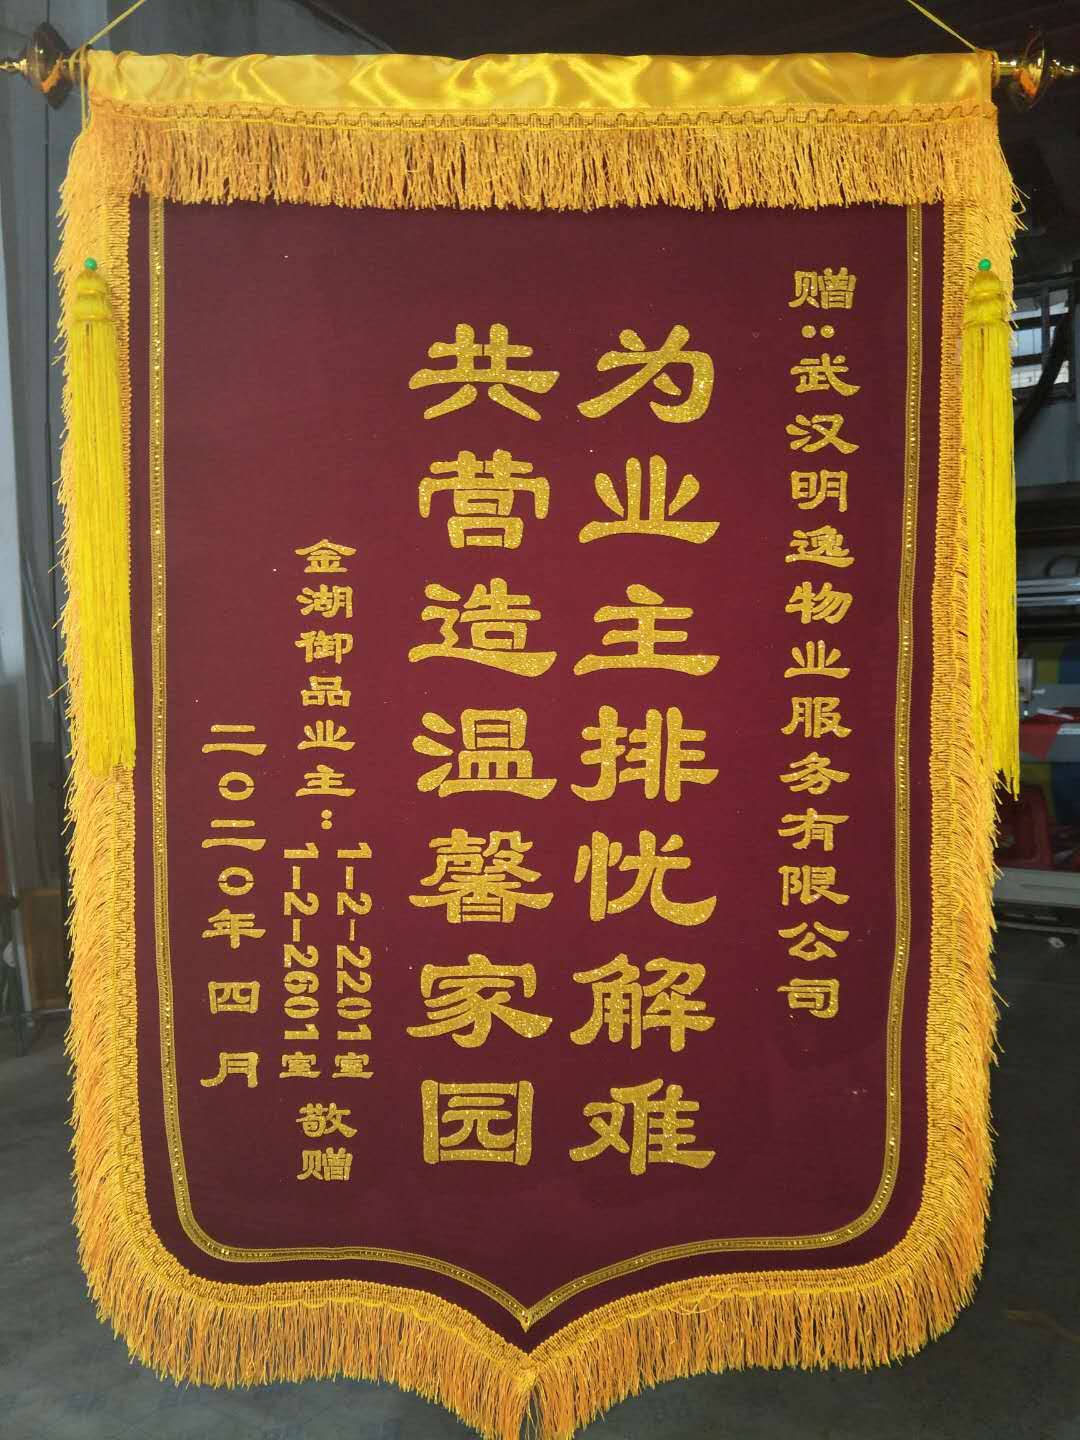 北京市总工会向北京市律师协会赠送锦旗